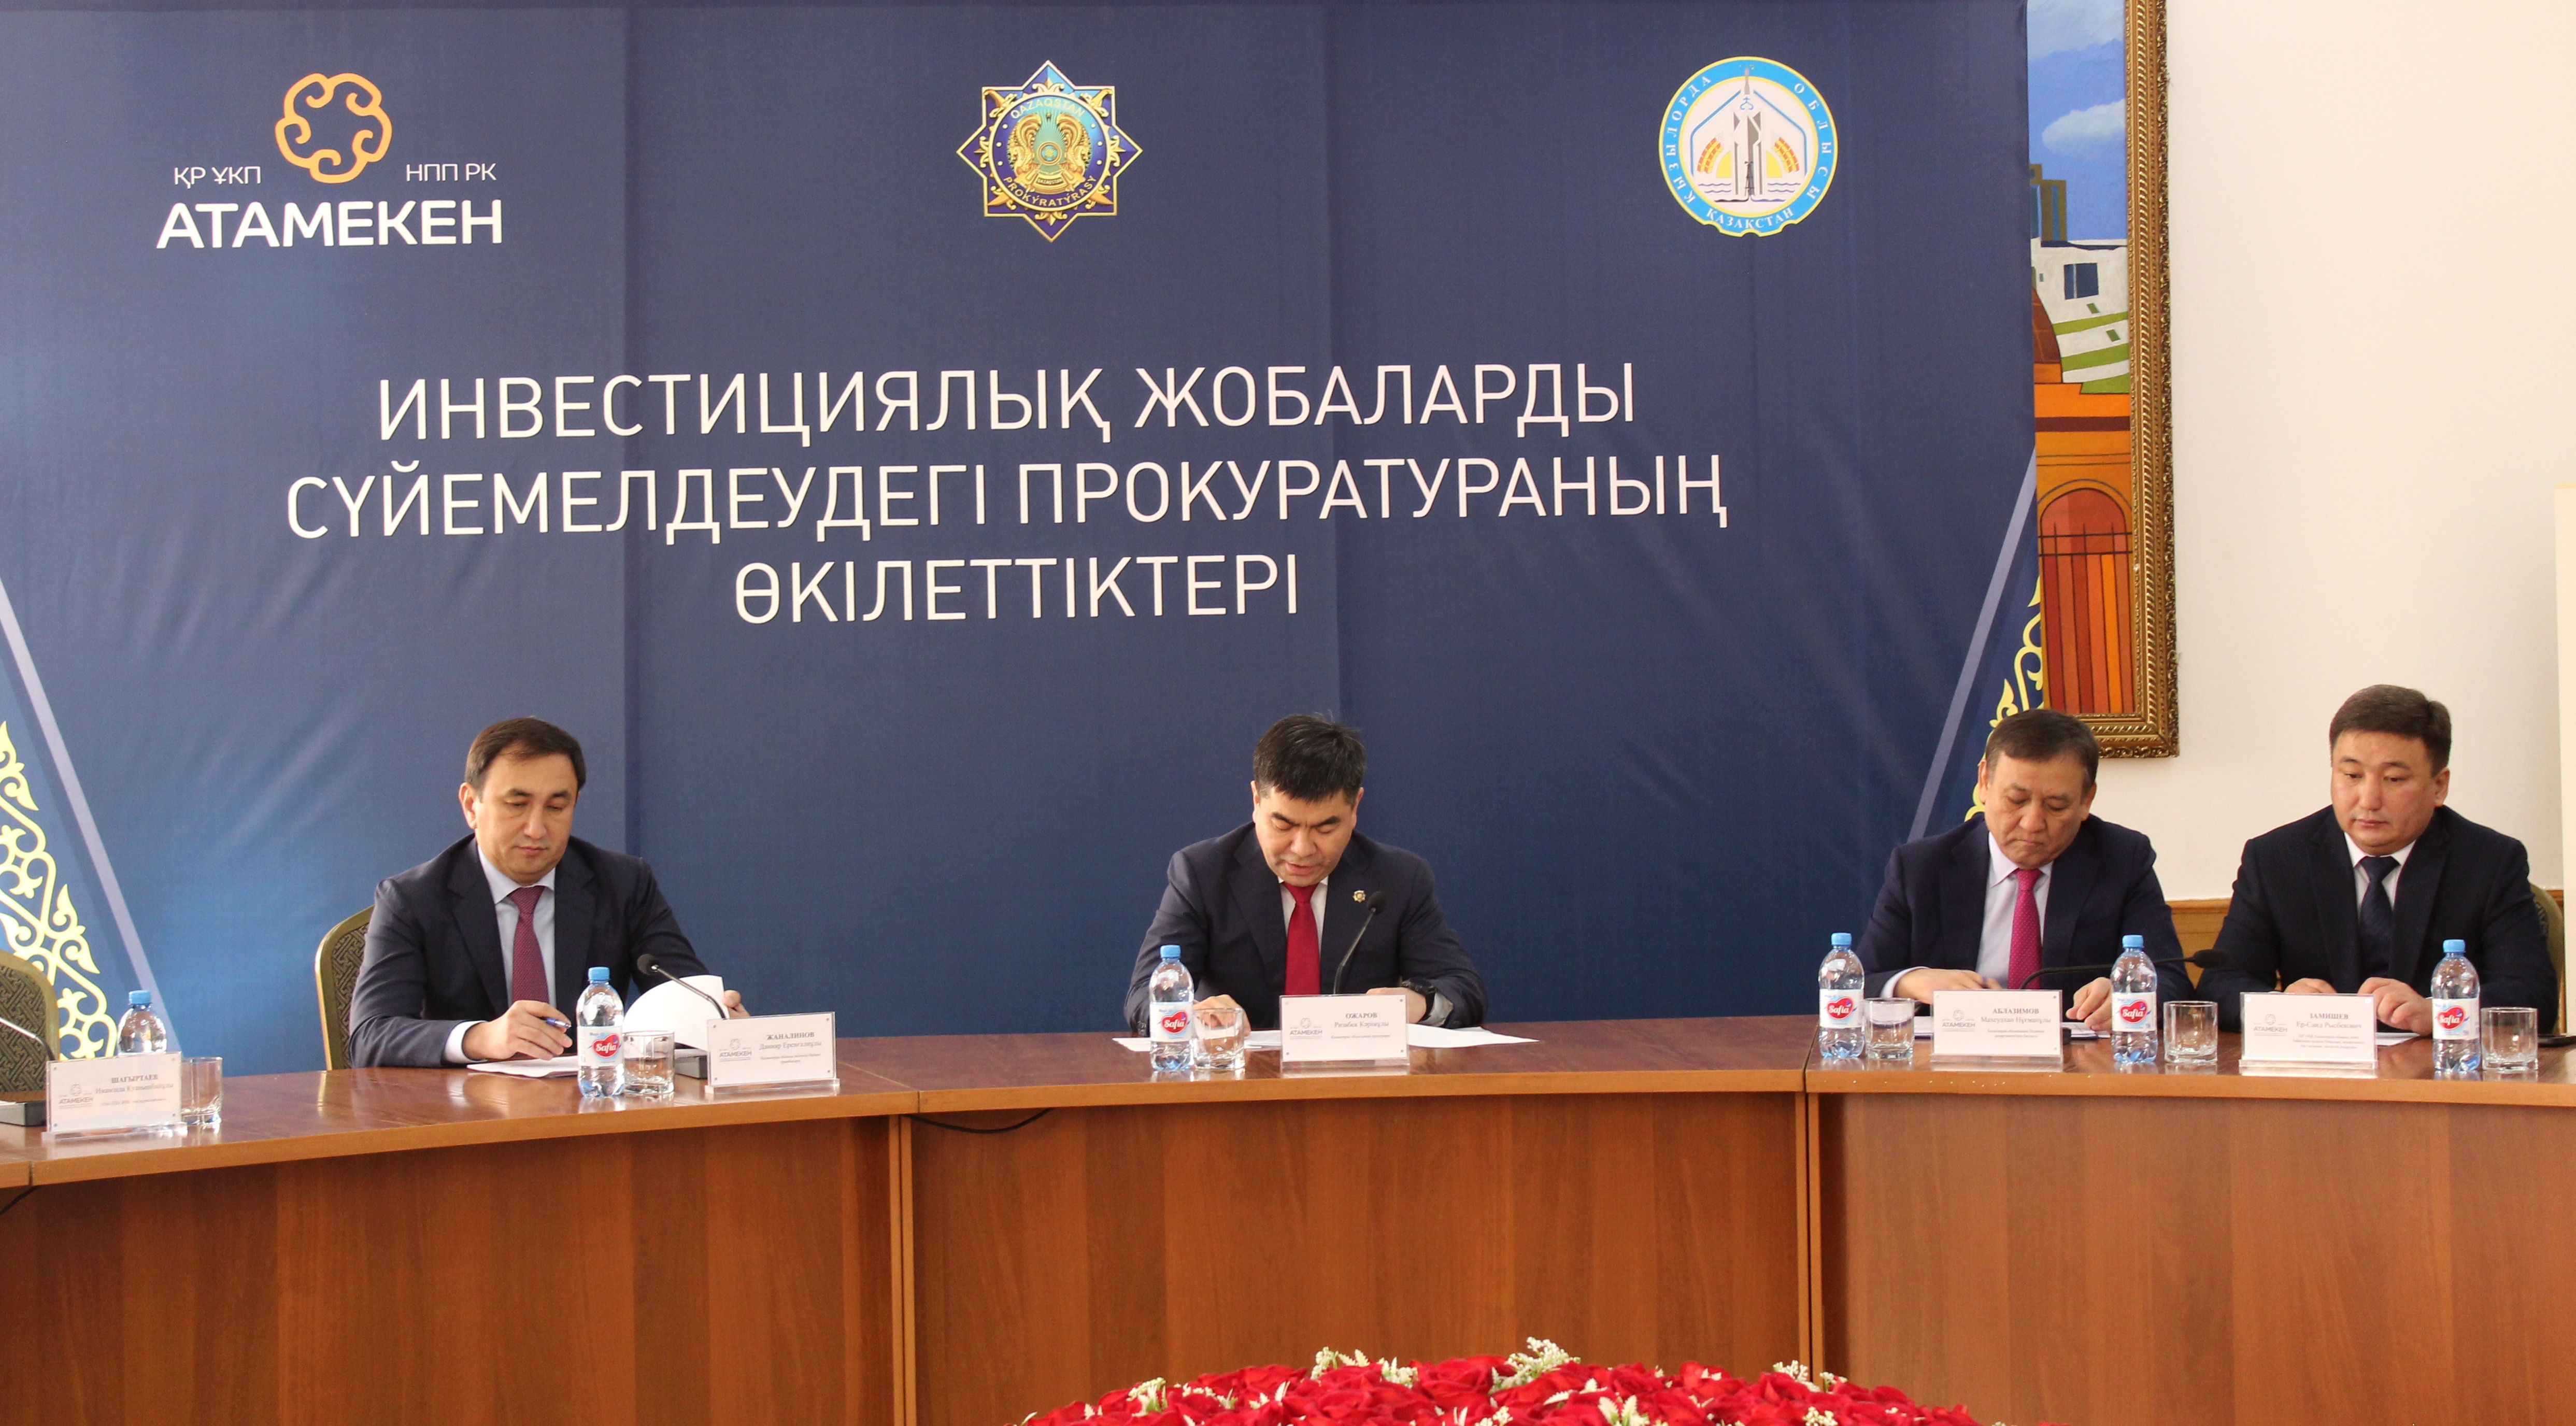 В Кызылординской области по мерам прокуроров устранены проблемные вопросы по 5 инвестиционным проектам общей стоимостью 578 млрд тенге.